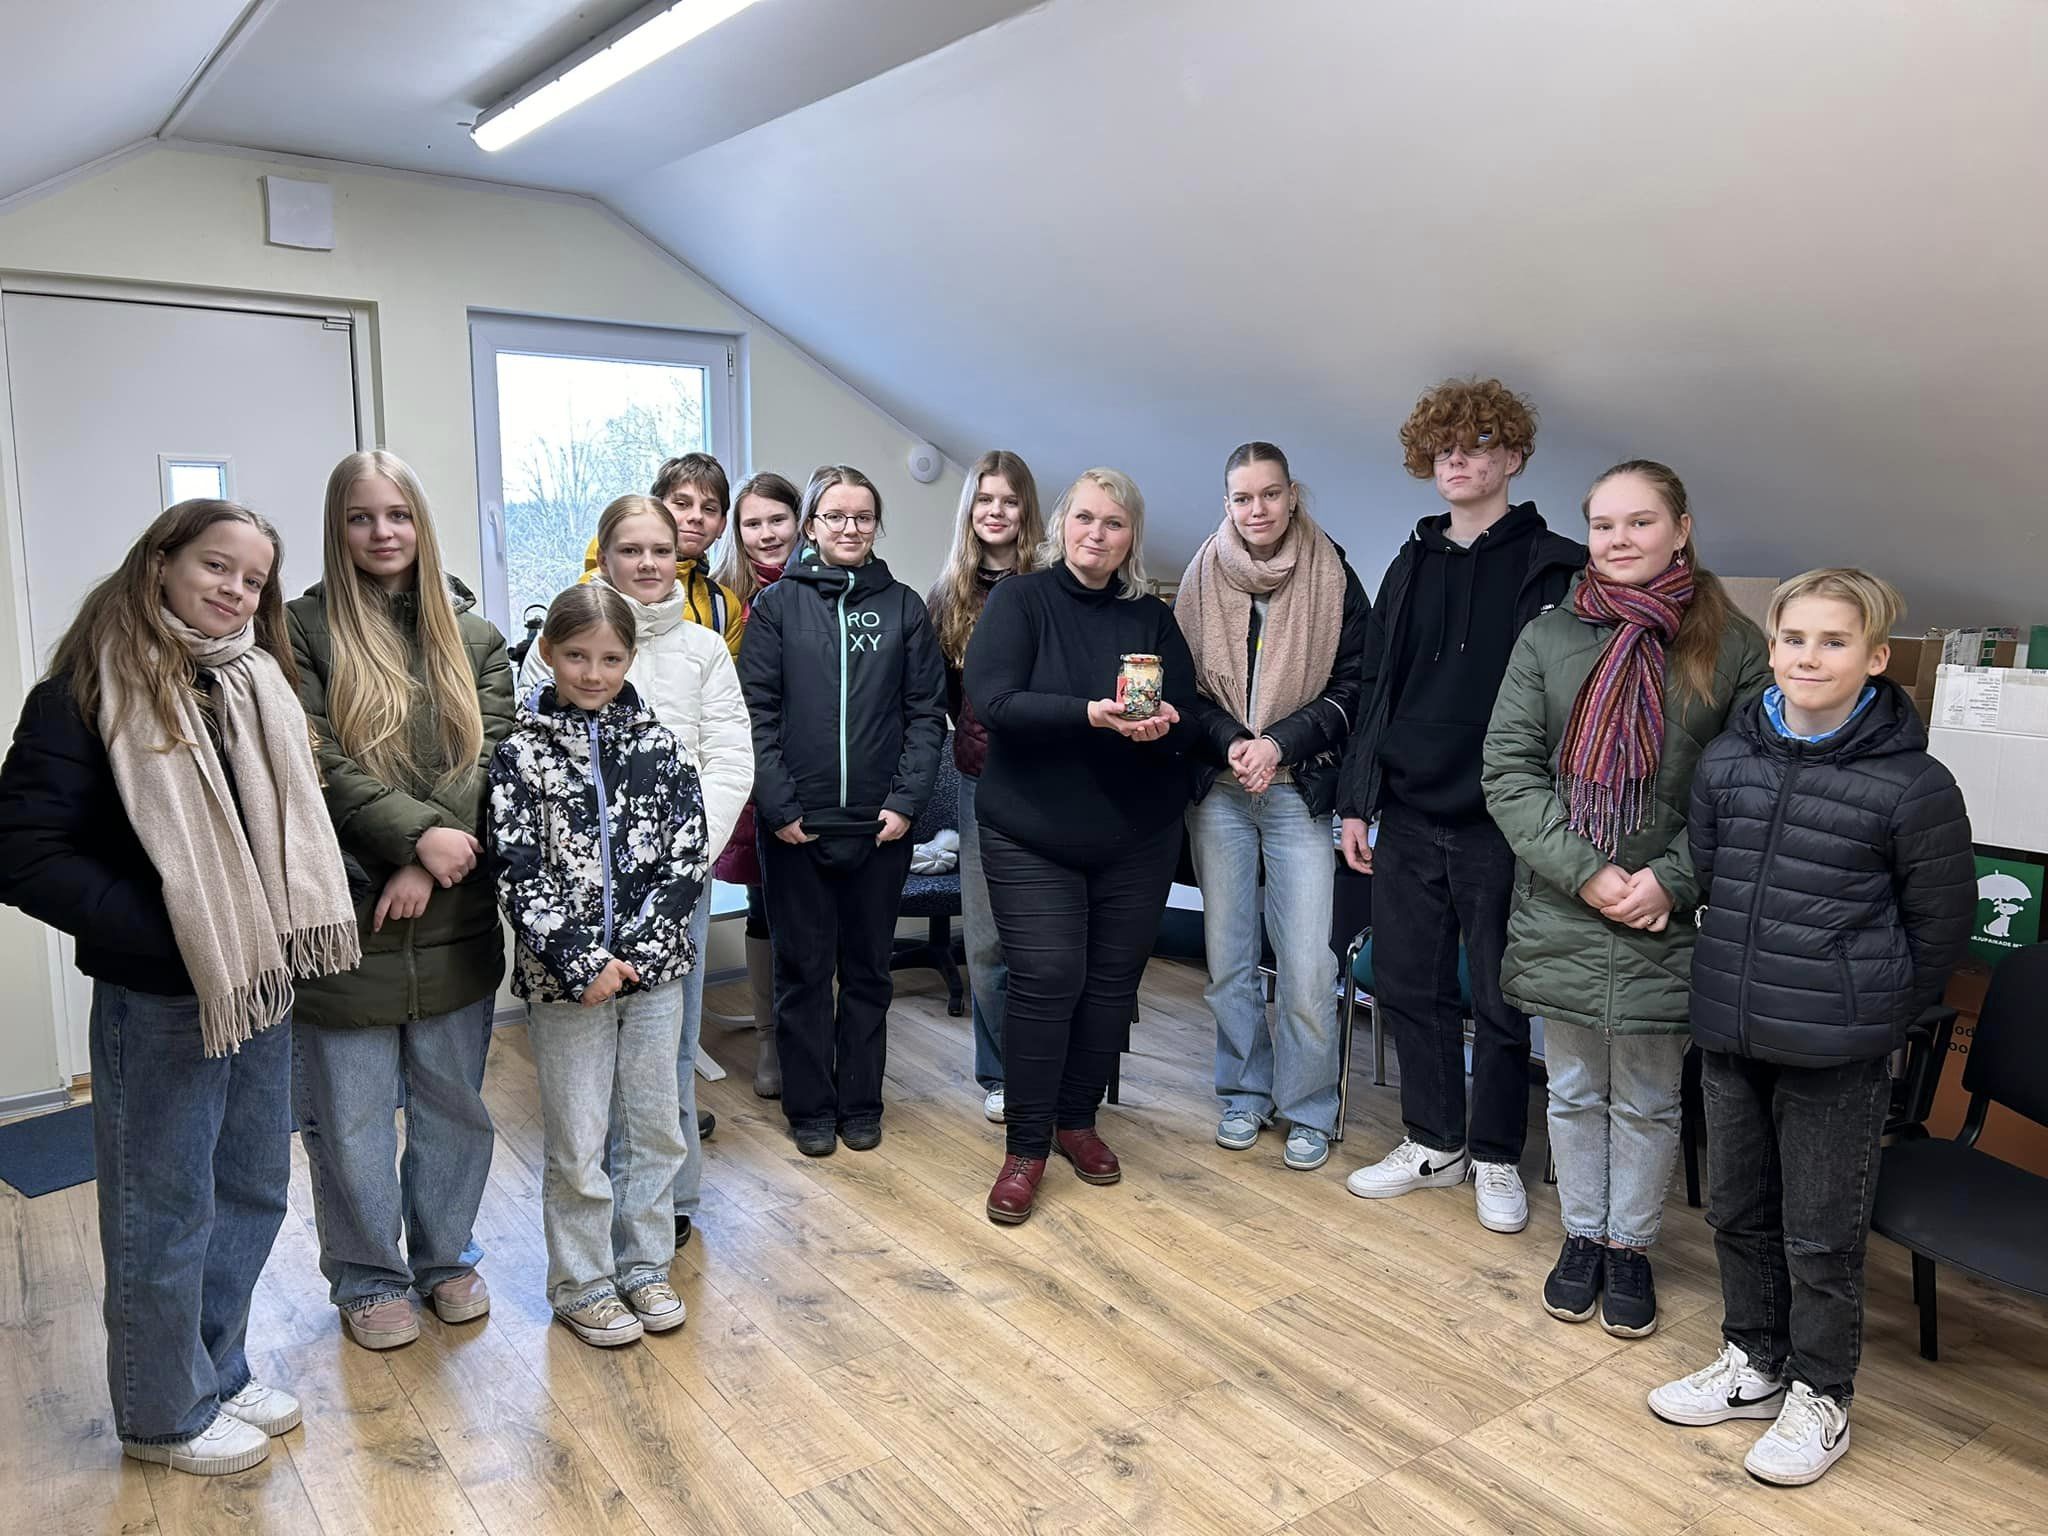 Kindluse Kool annetas koduta loomadele Kindluse Kooli õpilasesindus võttis 26. märtsil ette väljasõidu Tallinna loomade varjupaika, et Varjupaikade MTÜ-le üle a